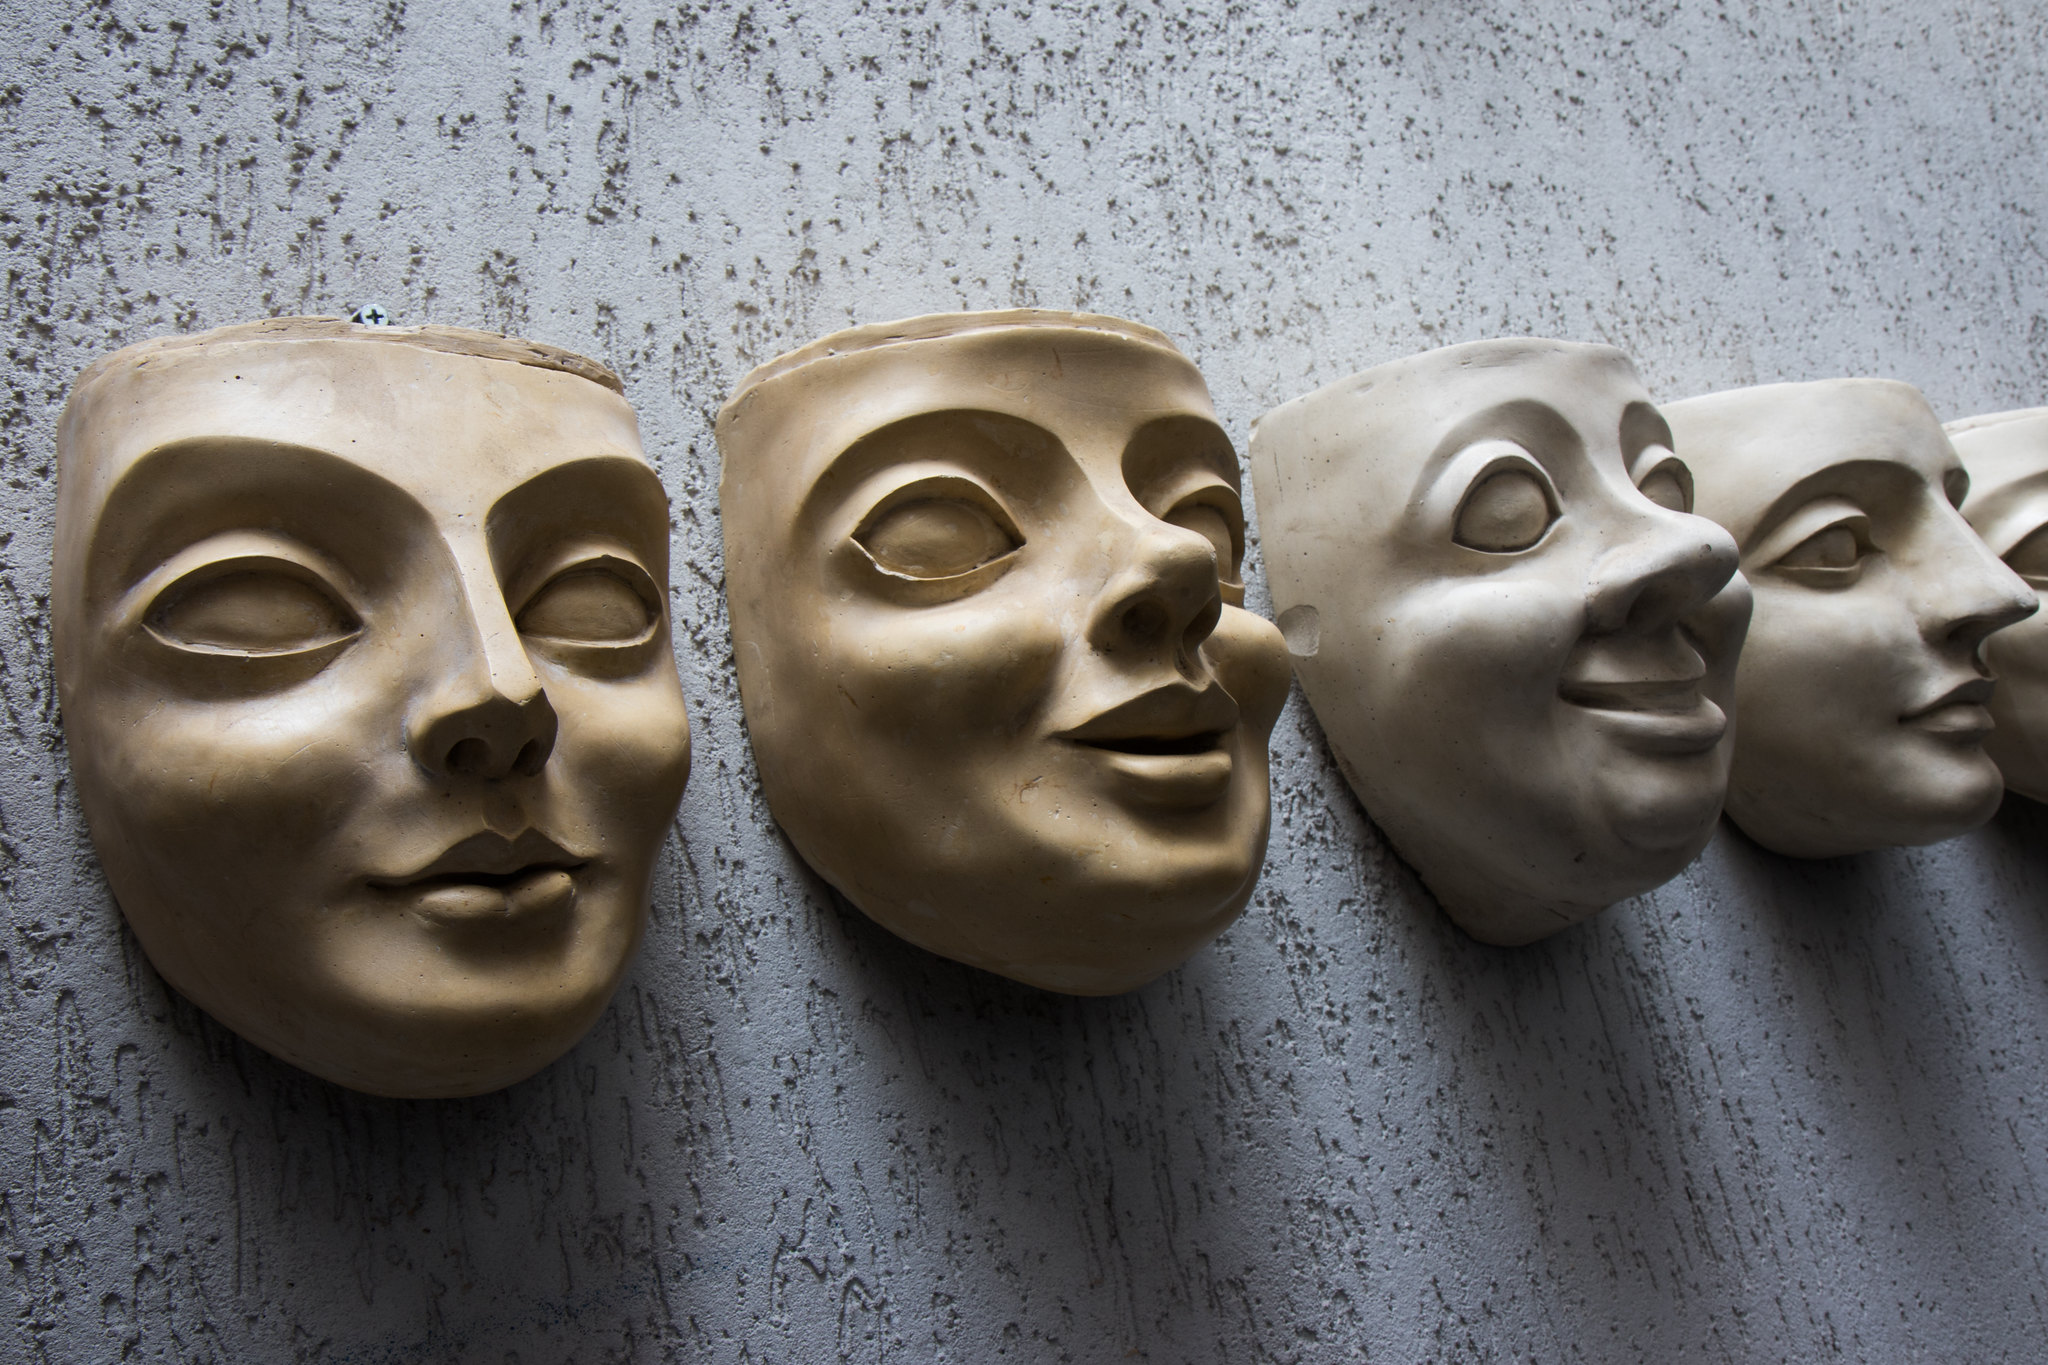 improvisação teatral com máscaras ~ Allifer School